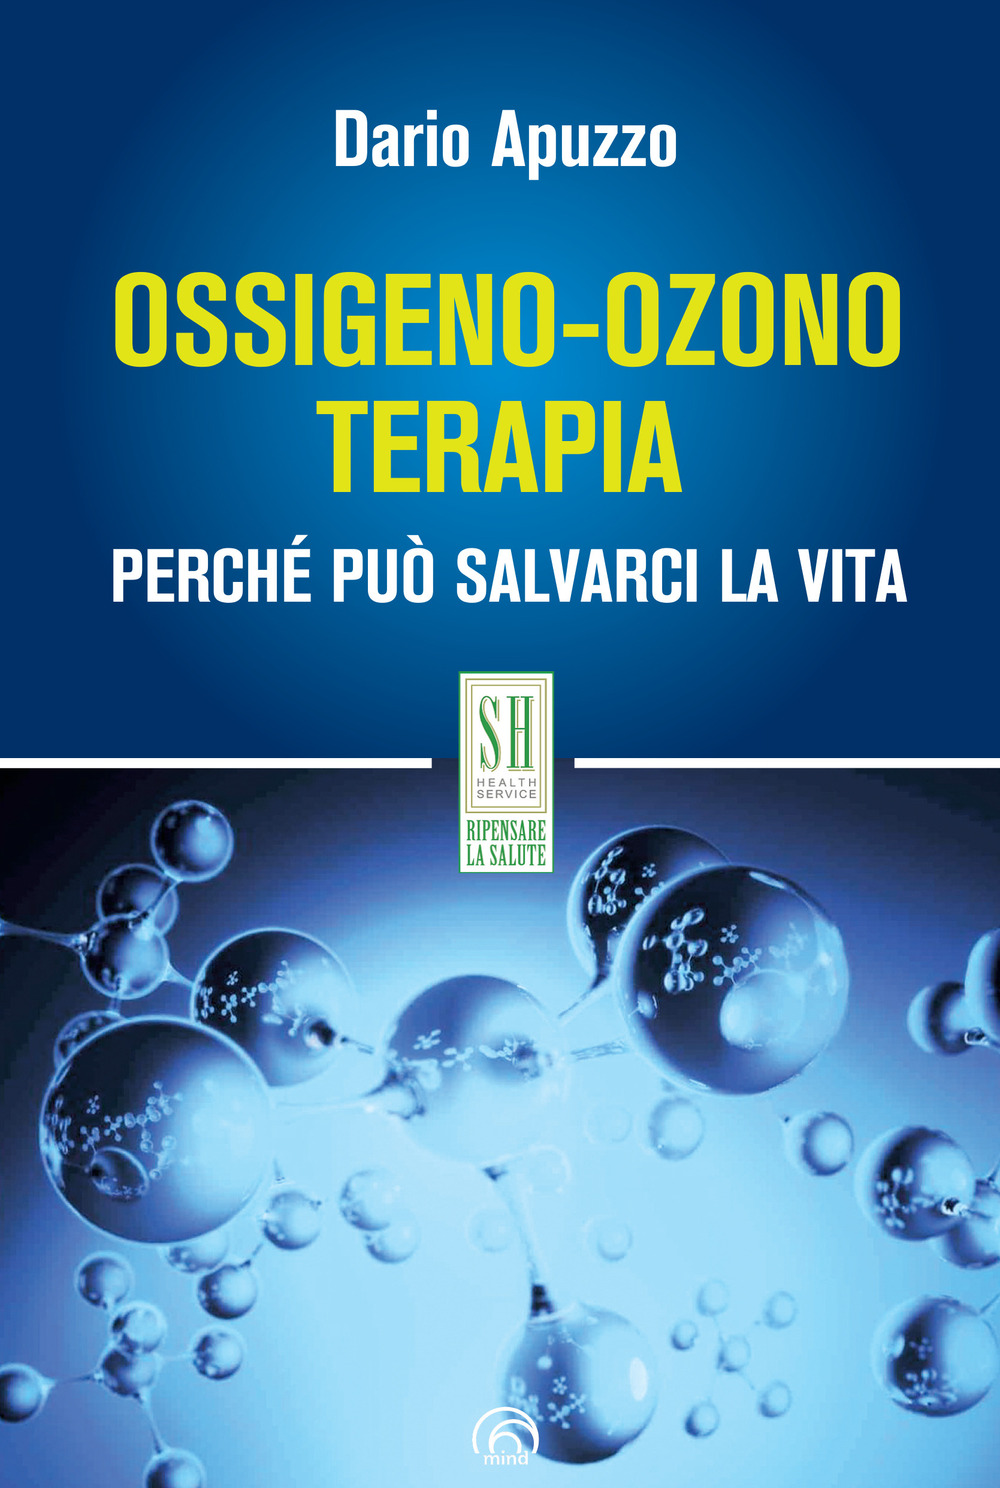 Libri Dario Apuzzo - Ossigeno-Ozono Terapia. Perche Puo Salvarci La Vita NUOVO SIGILLATO, EDIZIONE DEL 25/11/2021 SUBITO DISPONIBILE